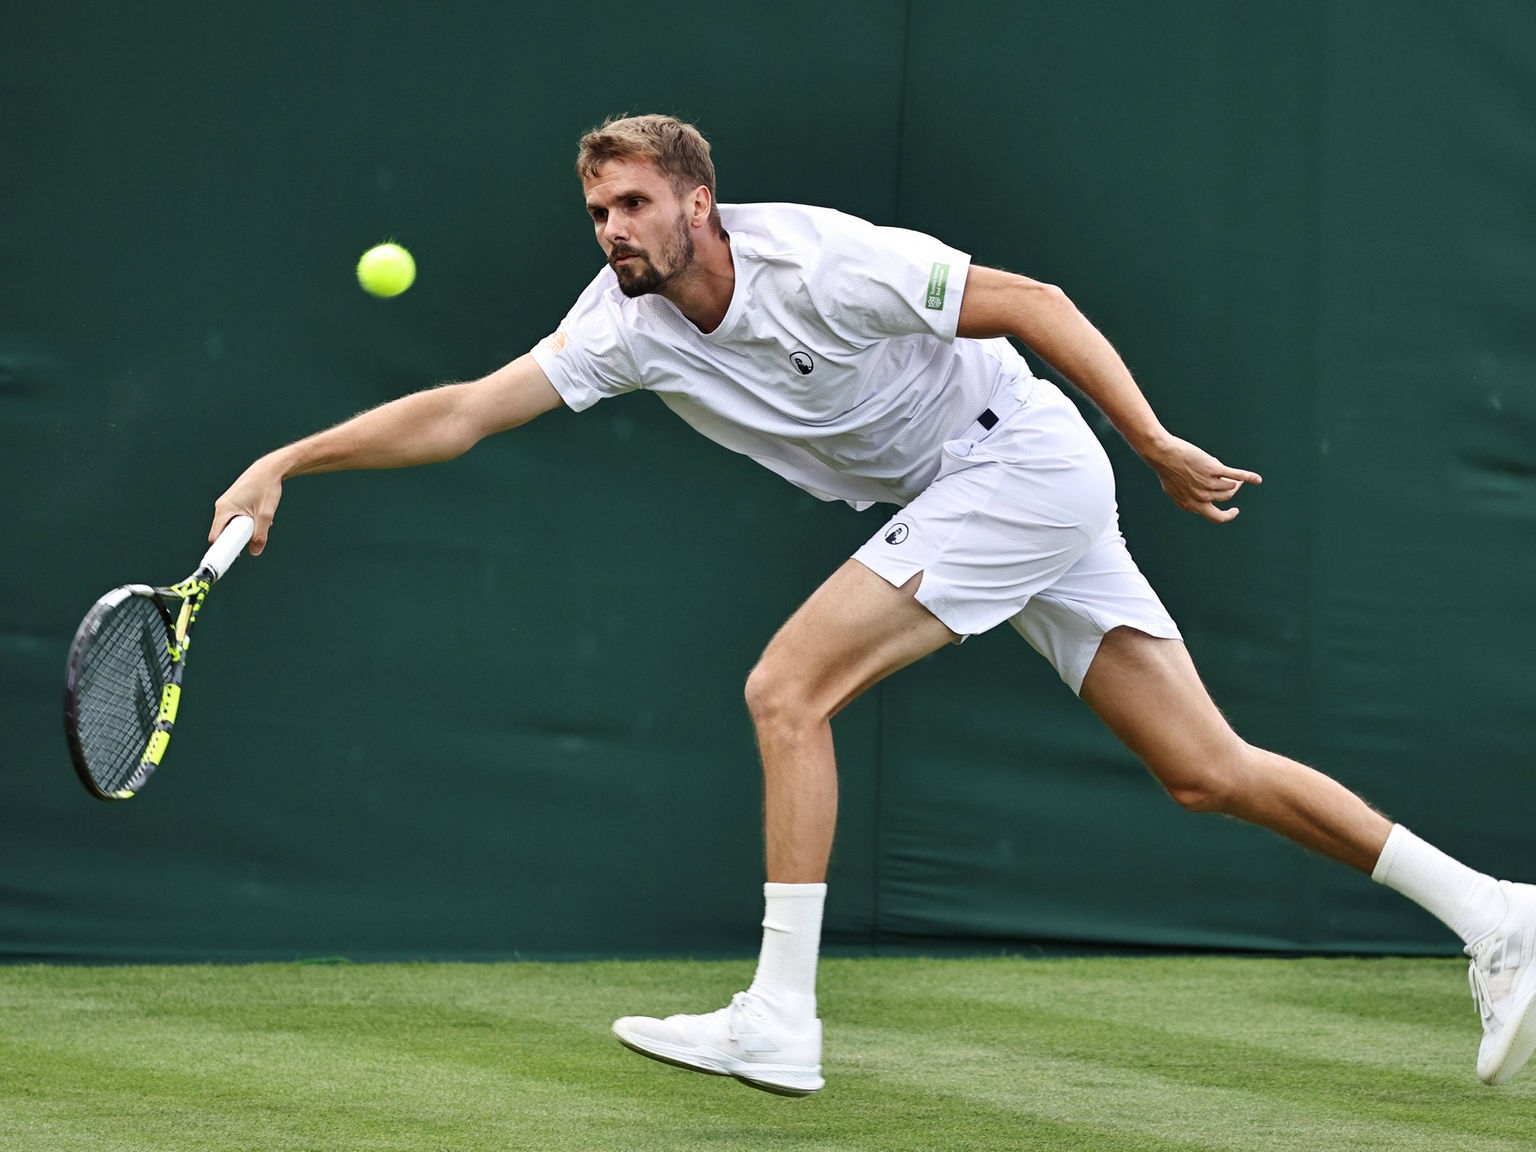 Tennis Otte erreicht gegen Koepfer zweite Wimbledon-Runde, Altmaier raus - Mehr Sport - Sport